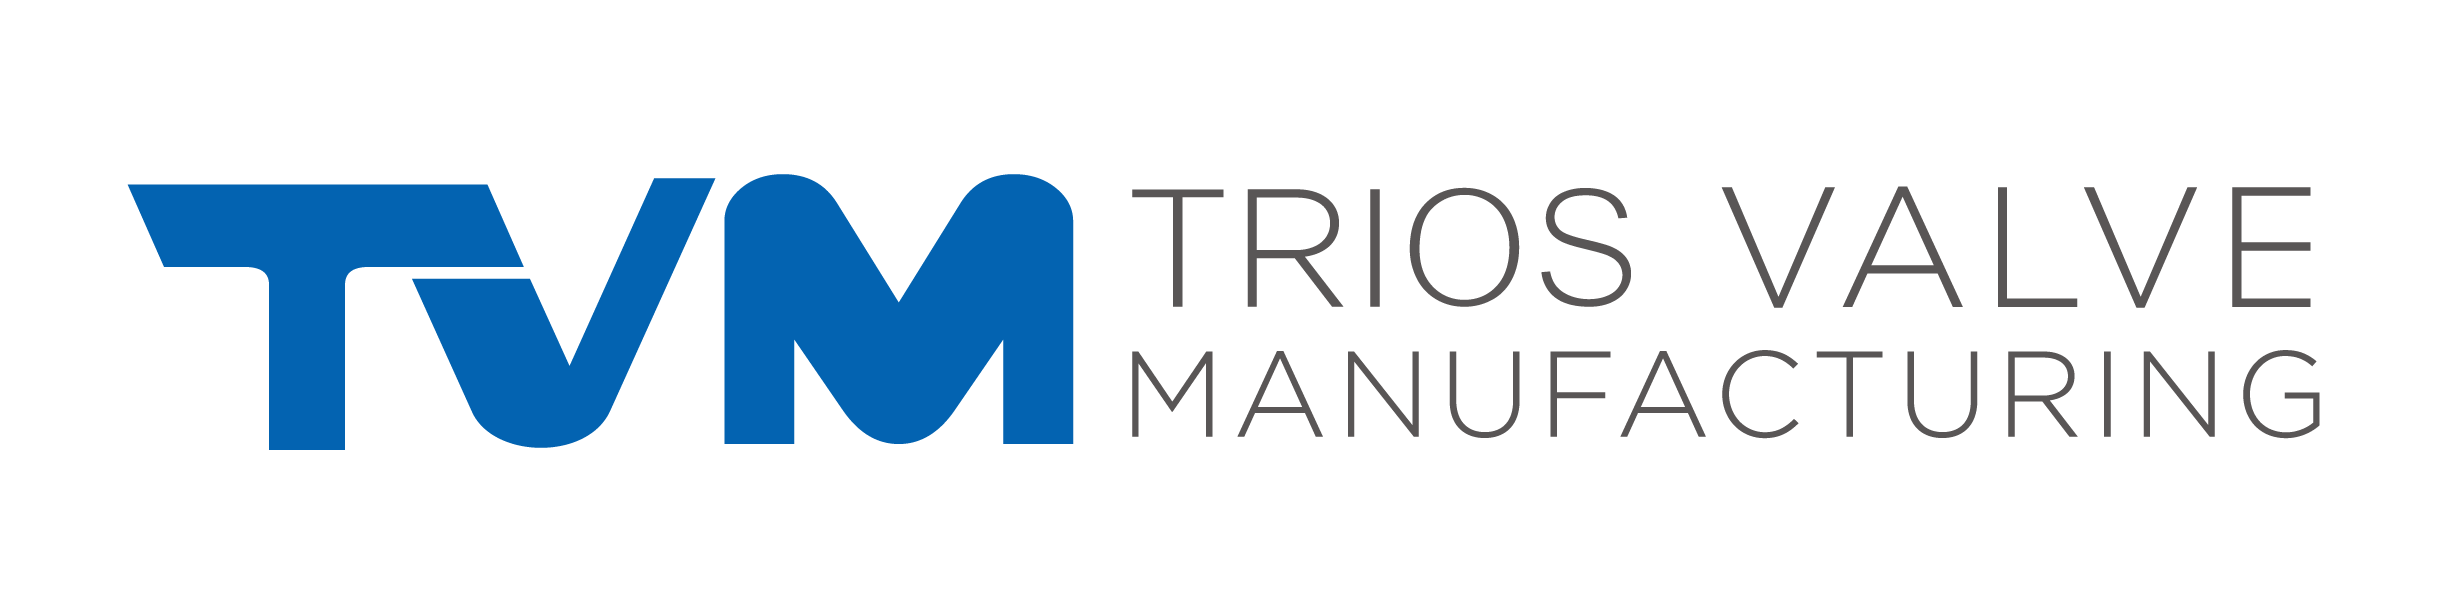 Trios Valve Manufacturing LLC